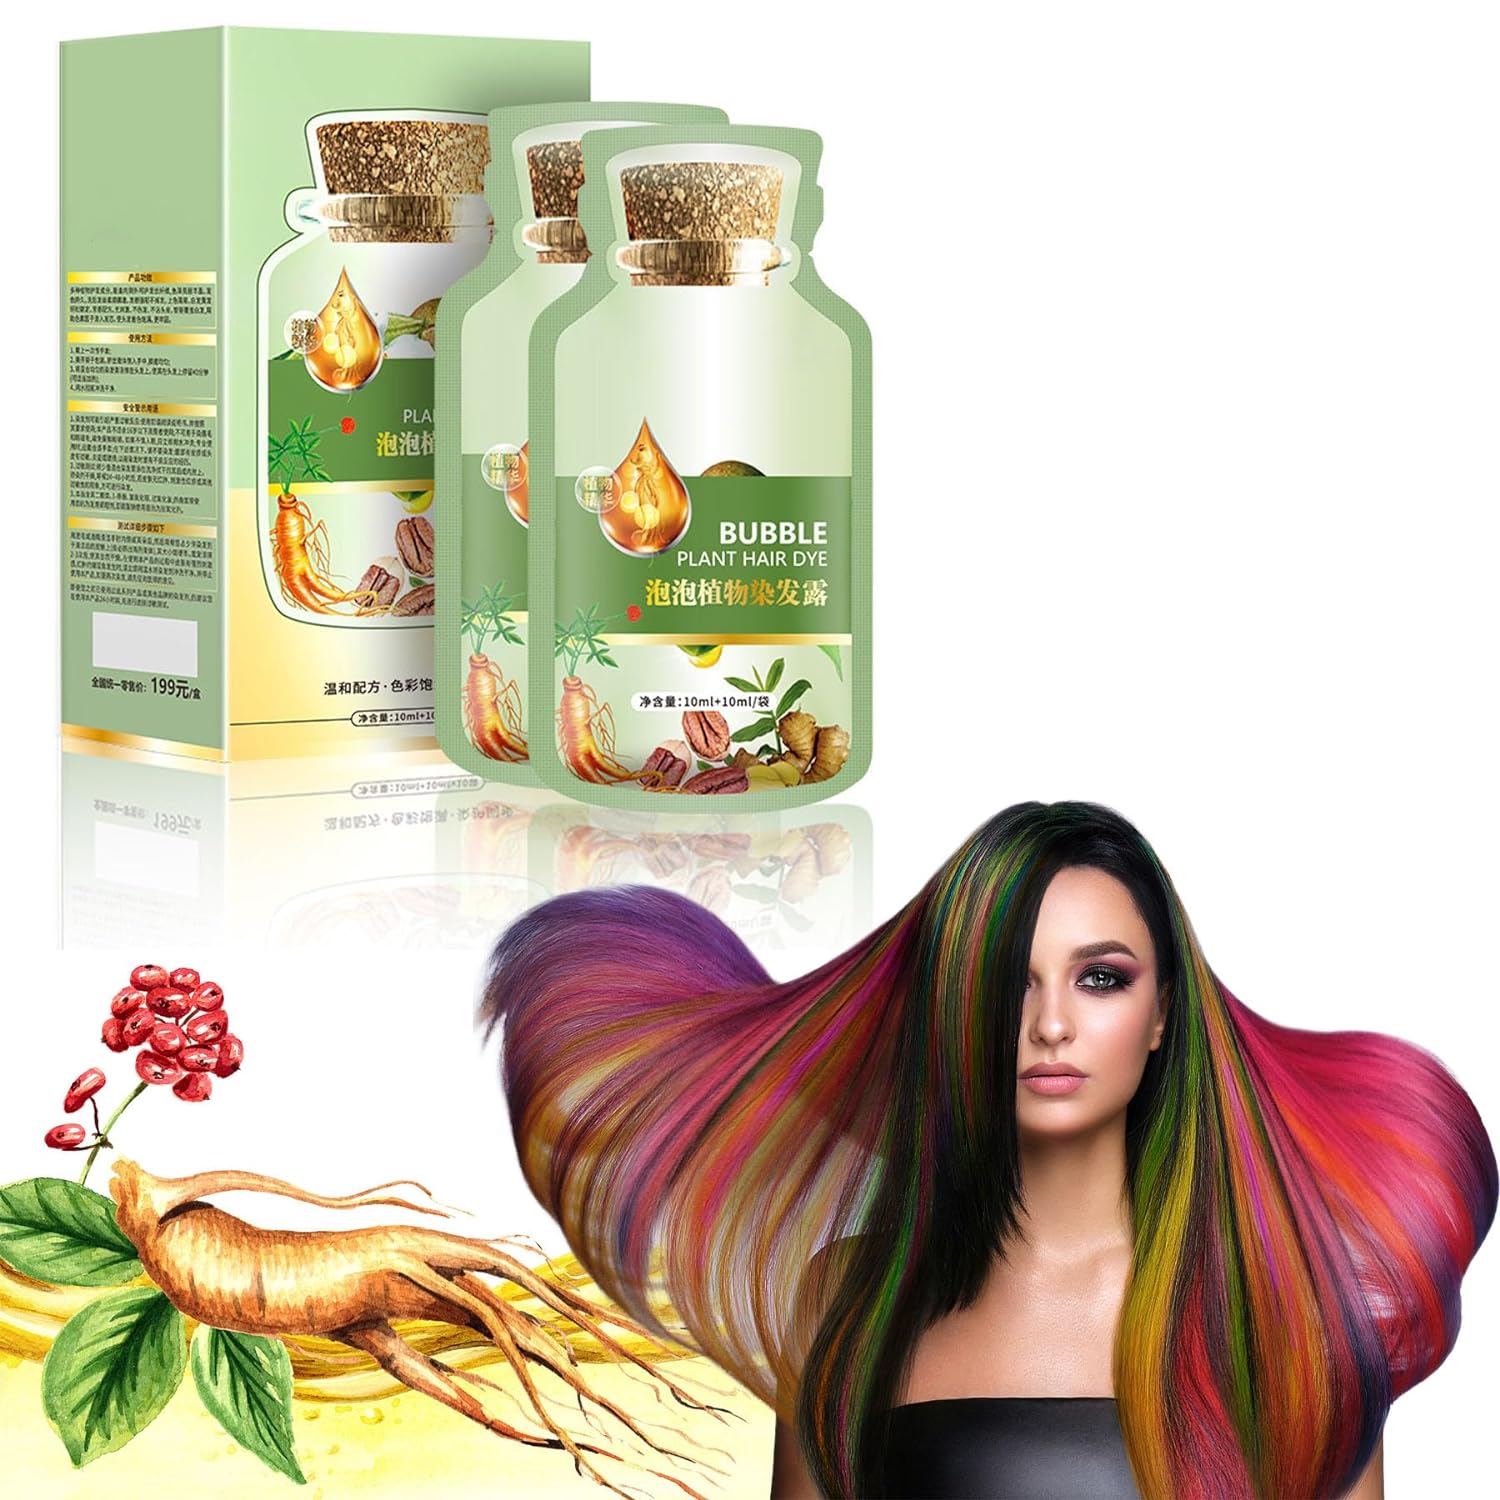 Natural Plant Hair Dye, HUANG YI BUBBLE PLANT HAIR DYE 20ml 10Packs/Box ，New Botanical Bubble Hair